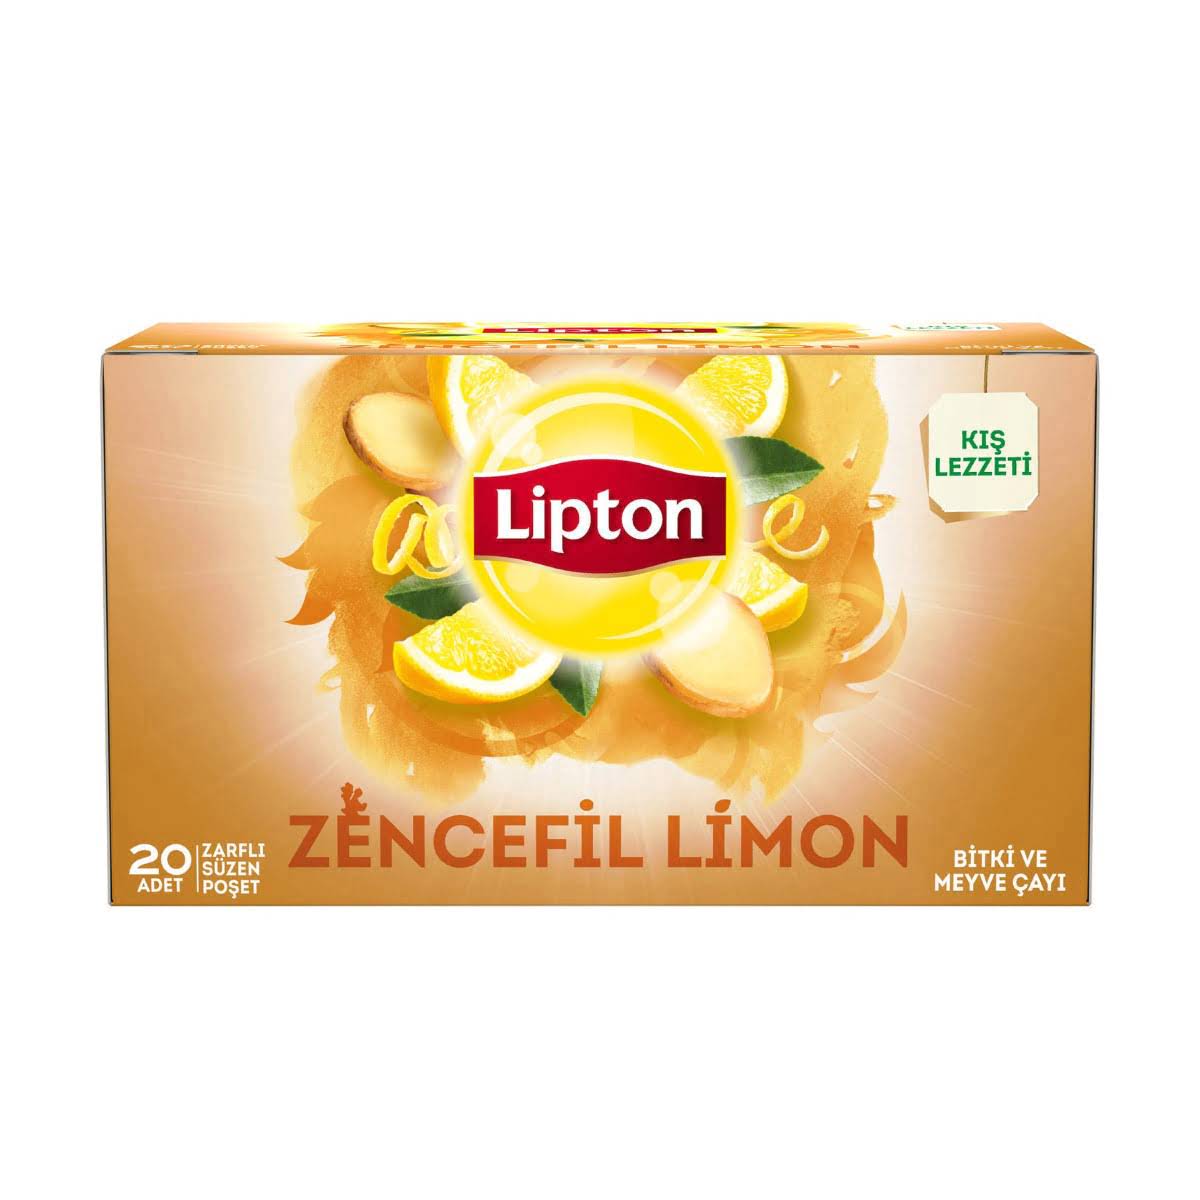 Bardak çay zencefil - limon 20 adetlik paketler halinde koli için 12 adet Lipton marka